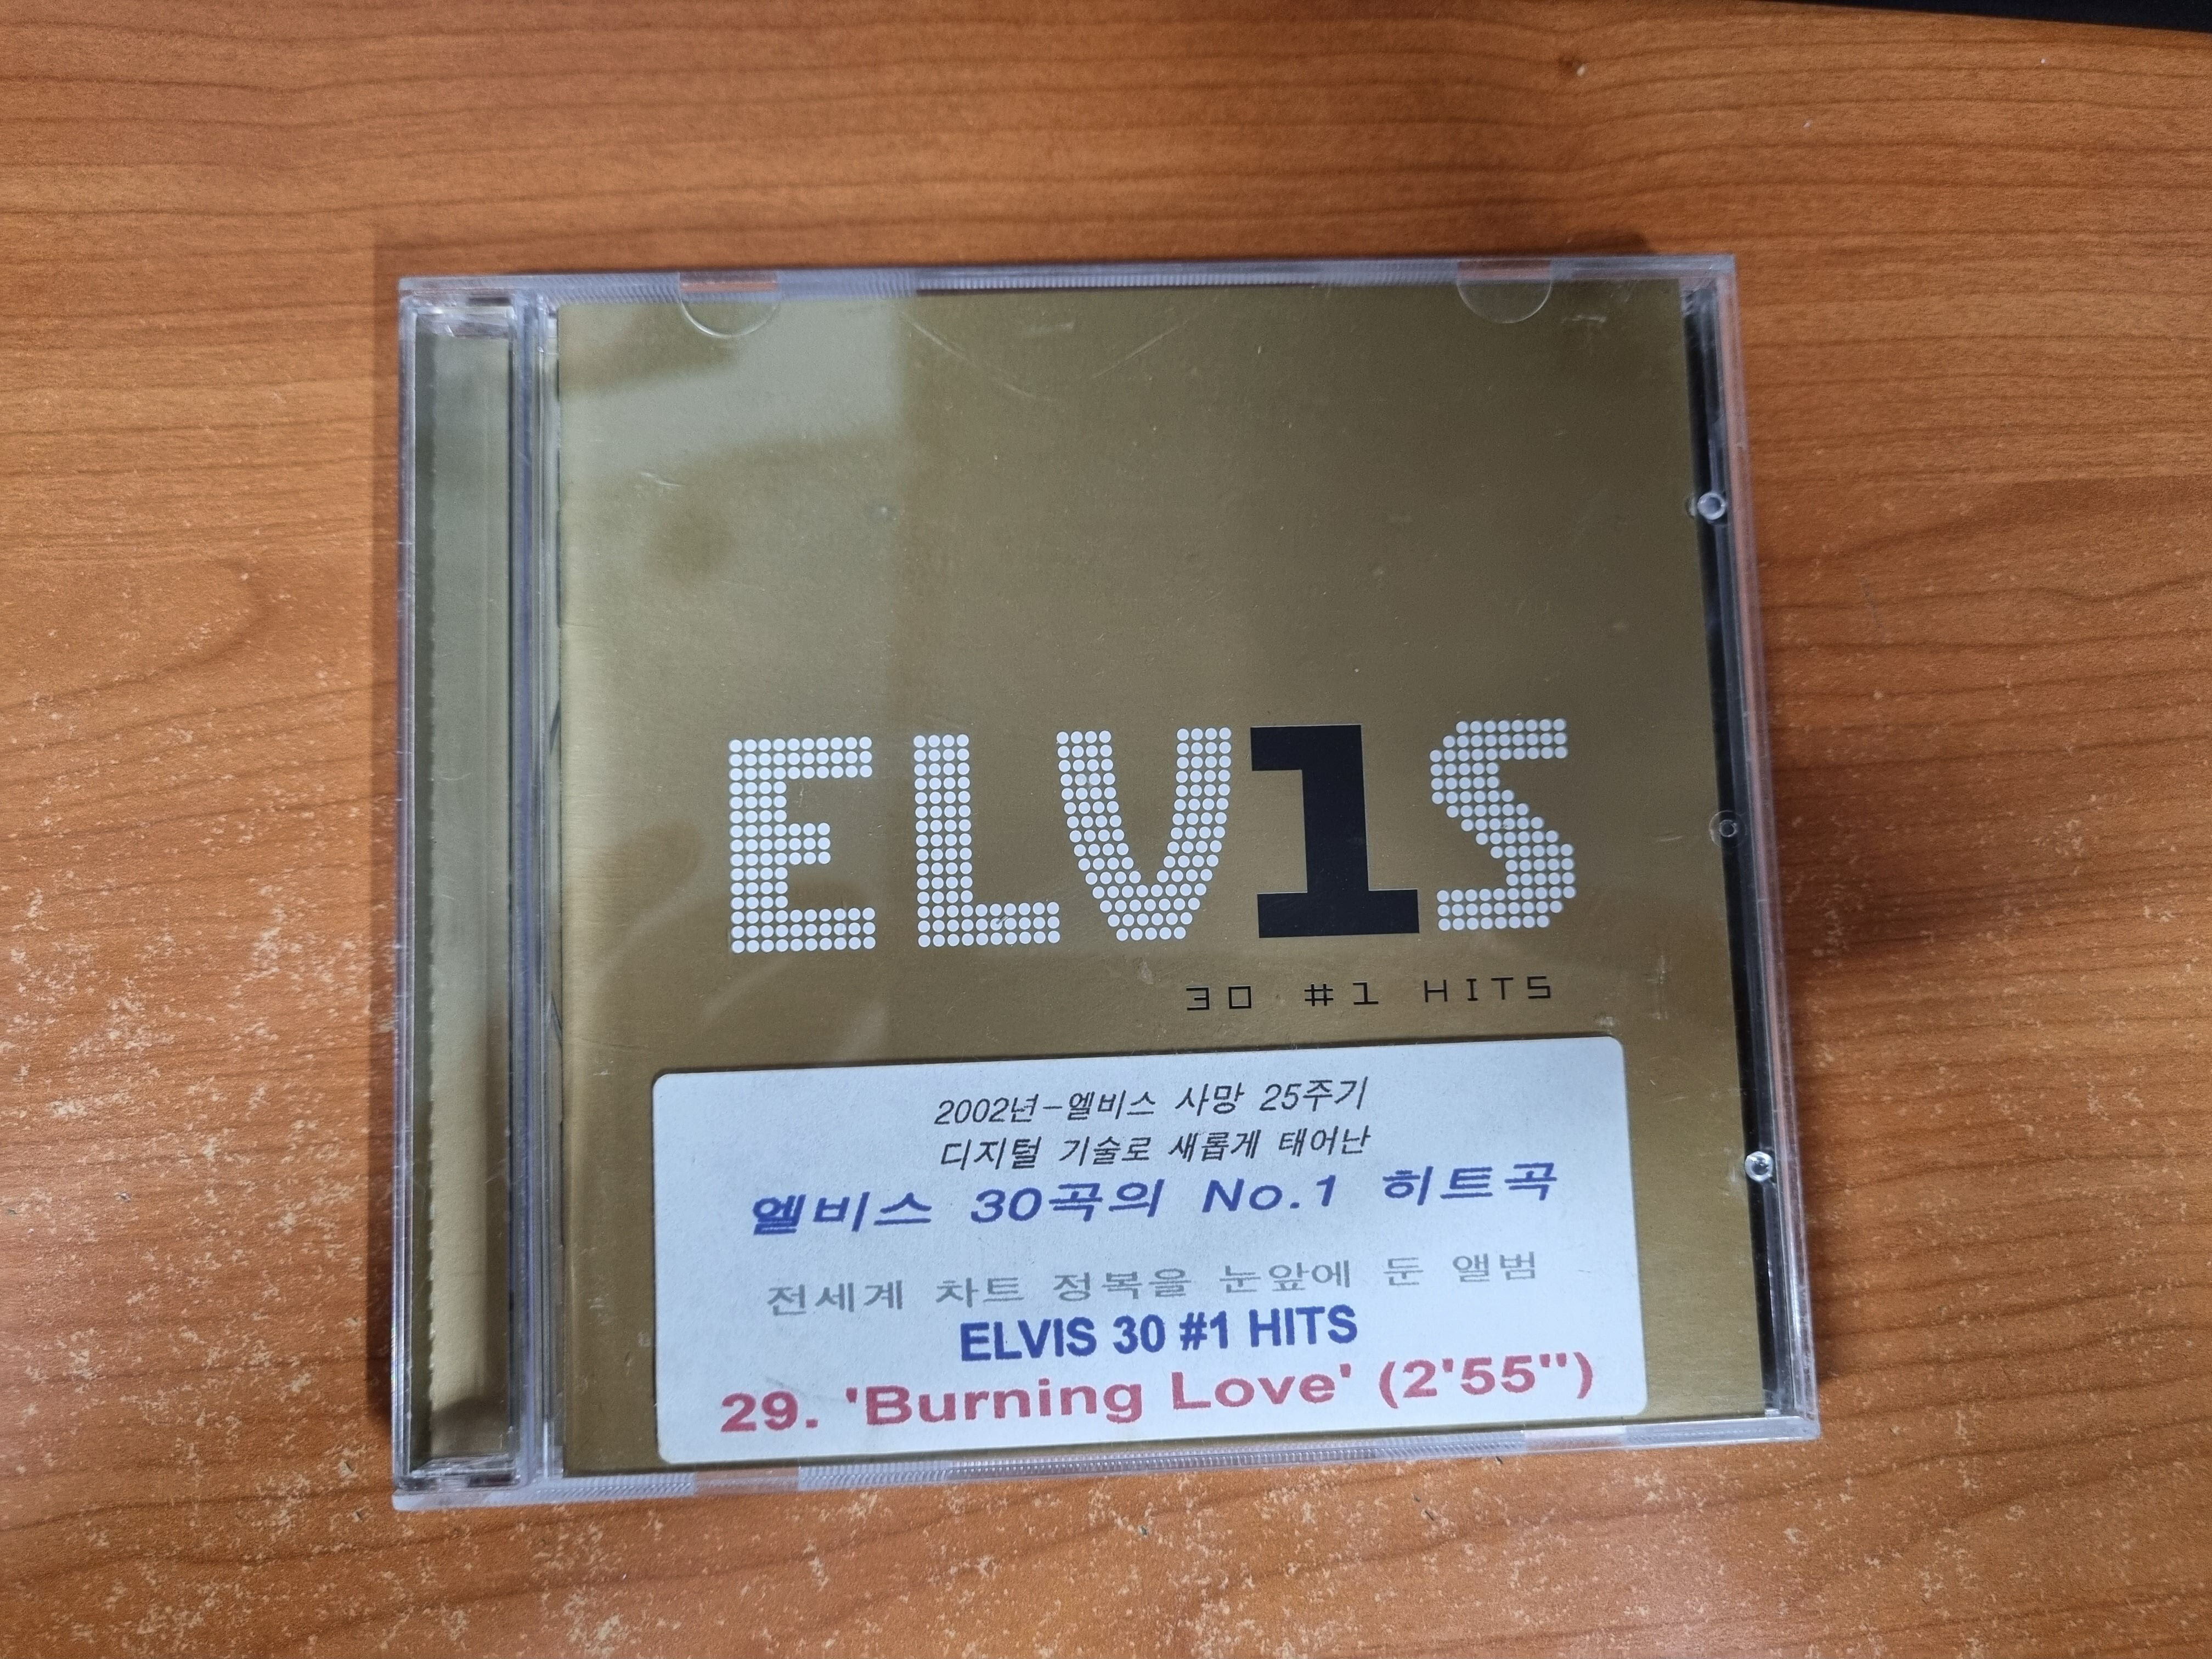 Elvis Presley - Elvis: 30 #1 Hits (Disc Box Sliders Series)